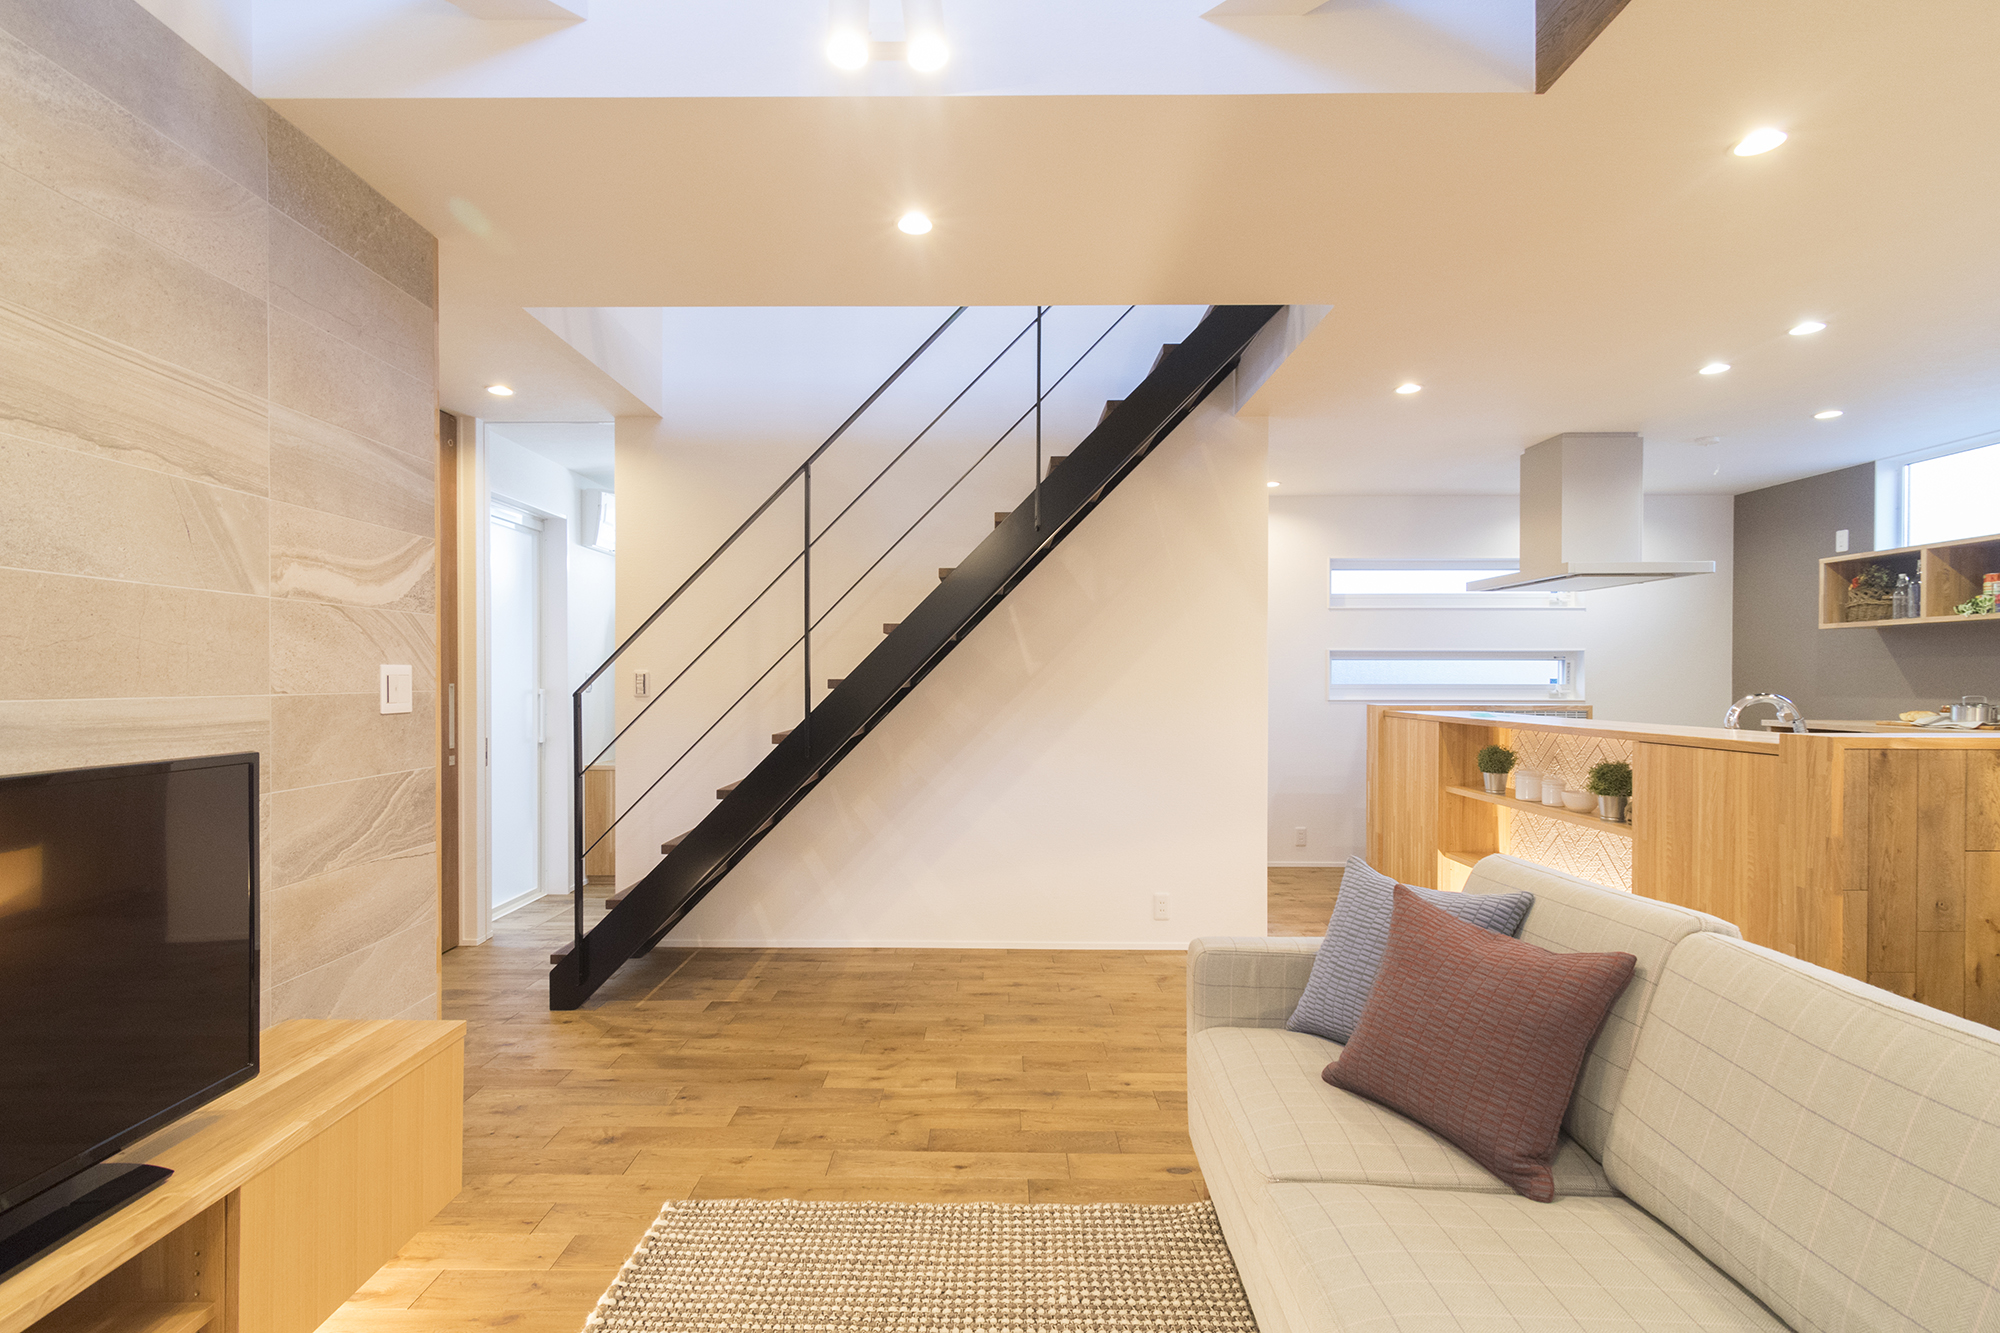 アイアン製の絵になる階段はカツデンアーキテックのもの。床材はアンティーク調のラスティックオークを採用